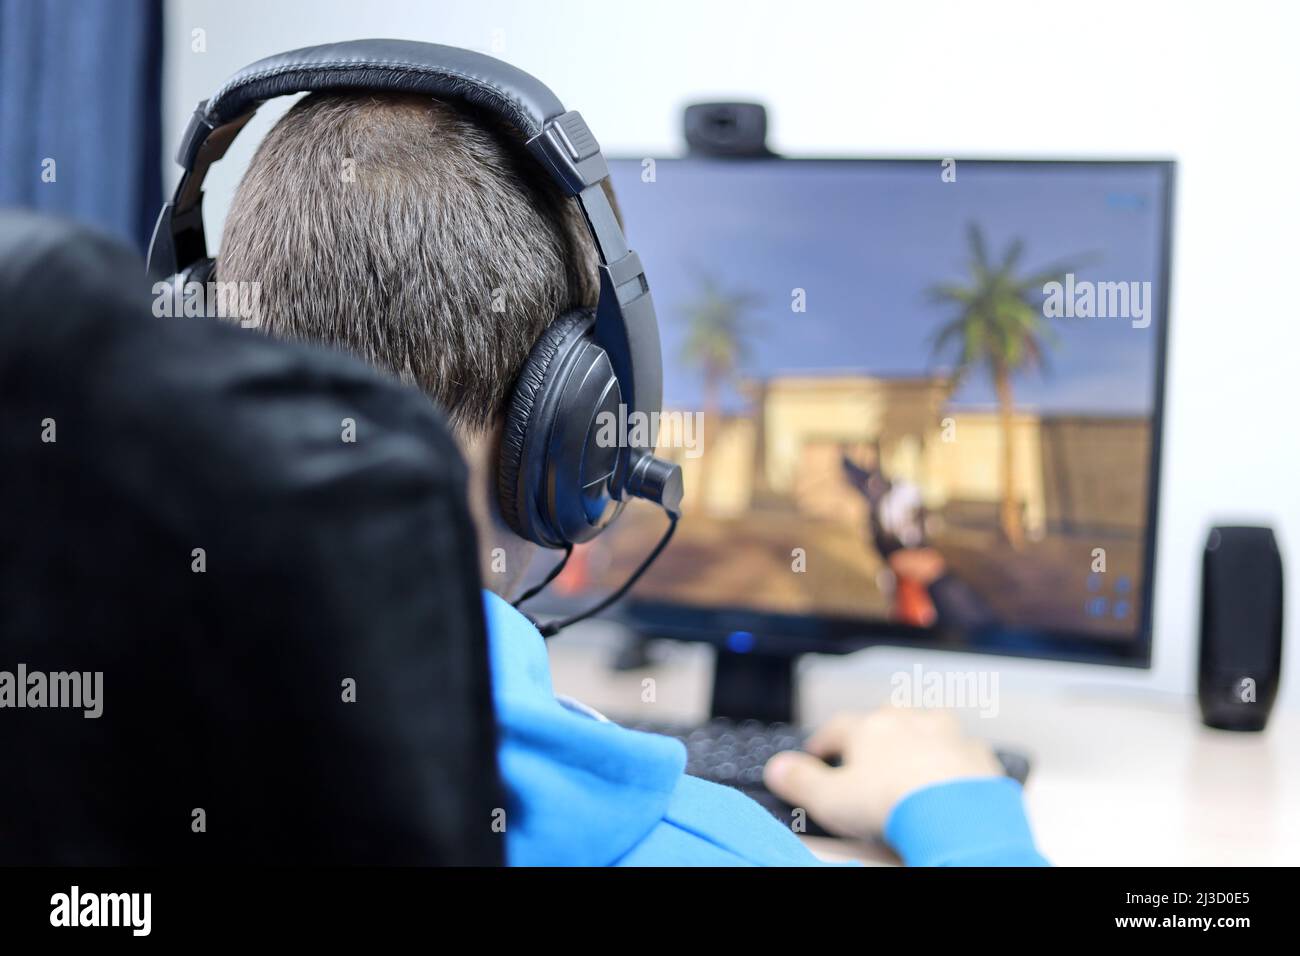 Homme dans un casque jouant à un jeu d'ordinateur sur un PC de bureau. Concept de dépendance de jeu, loisirs à la maison Banque D'Images